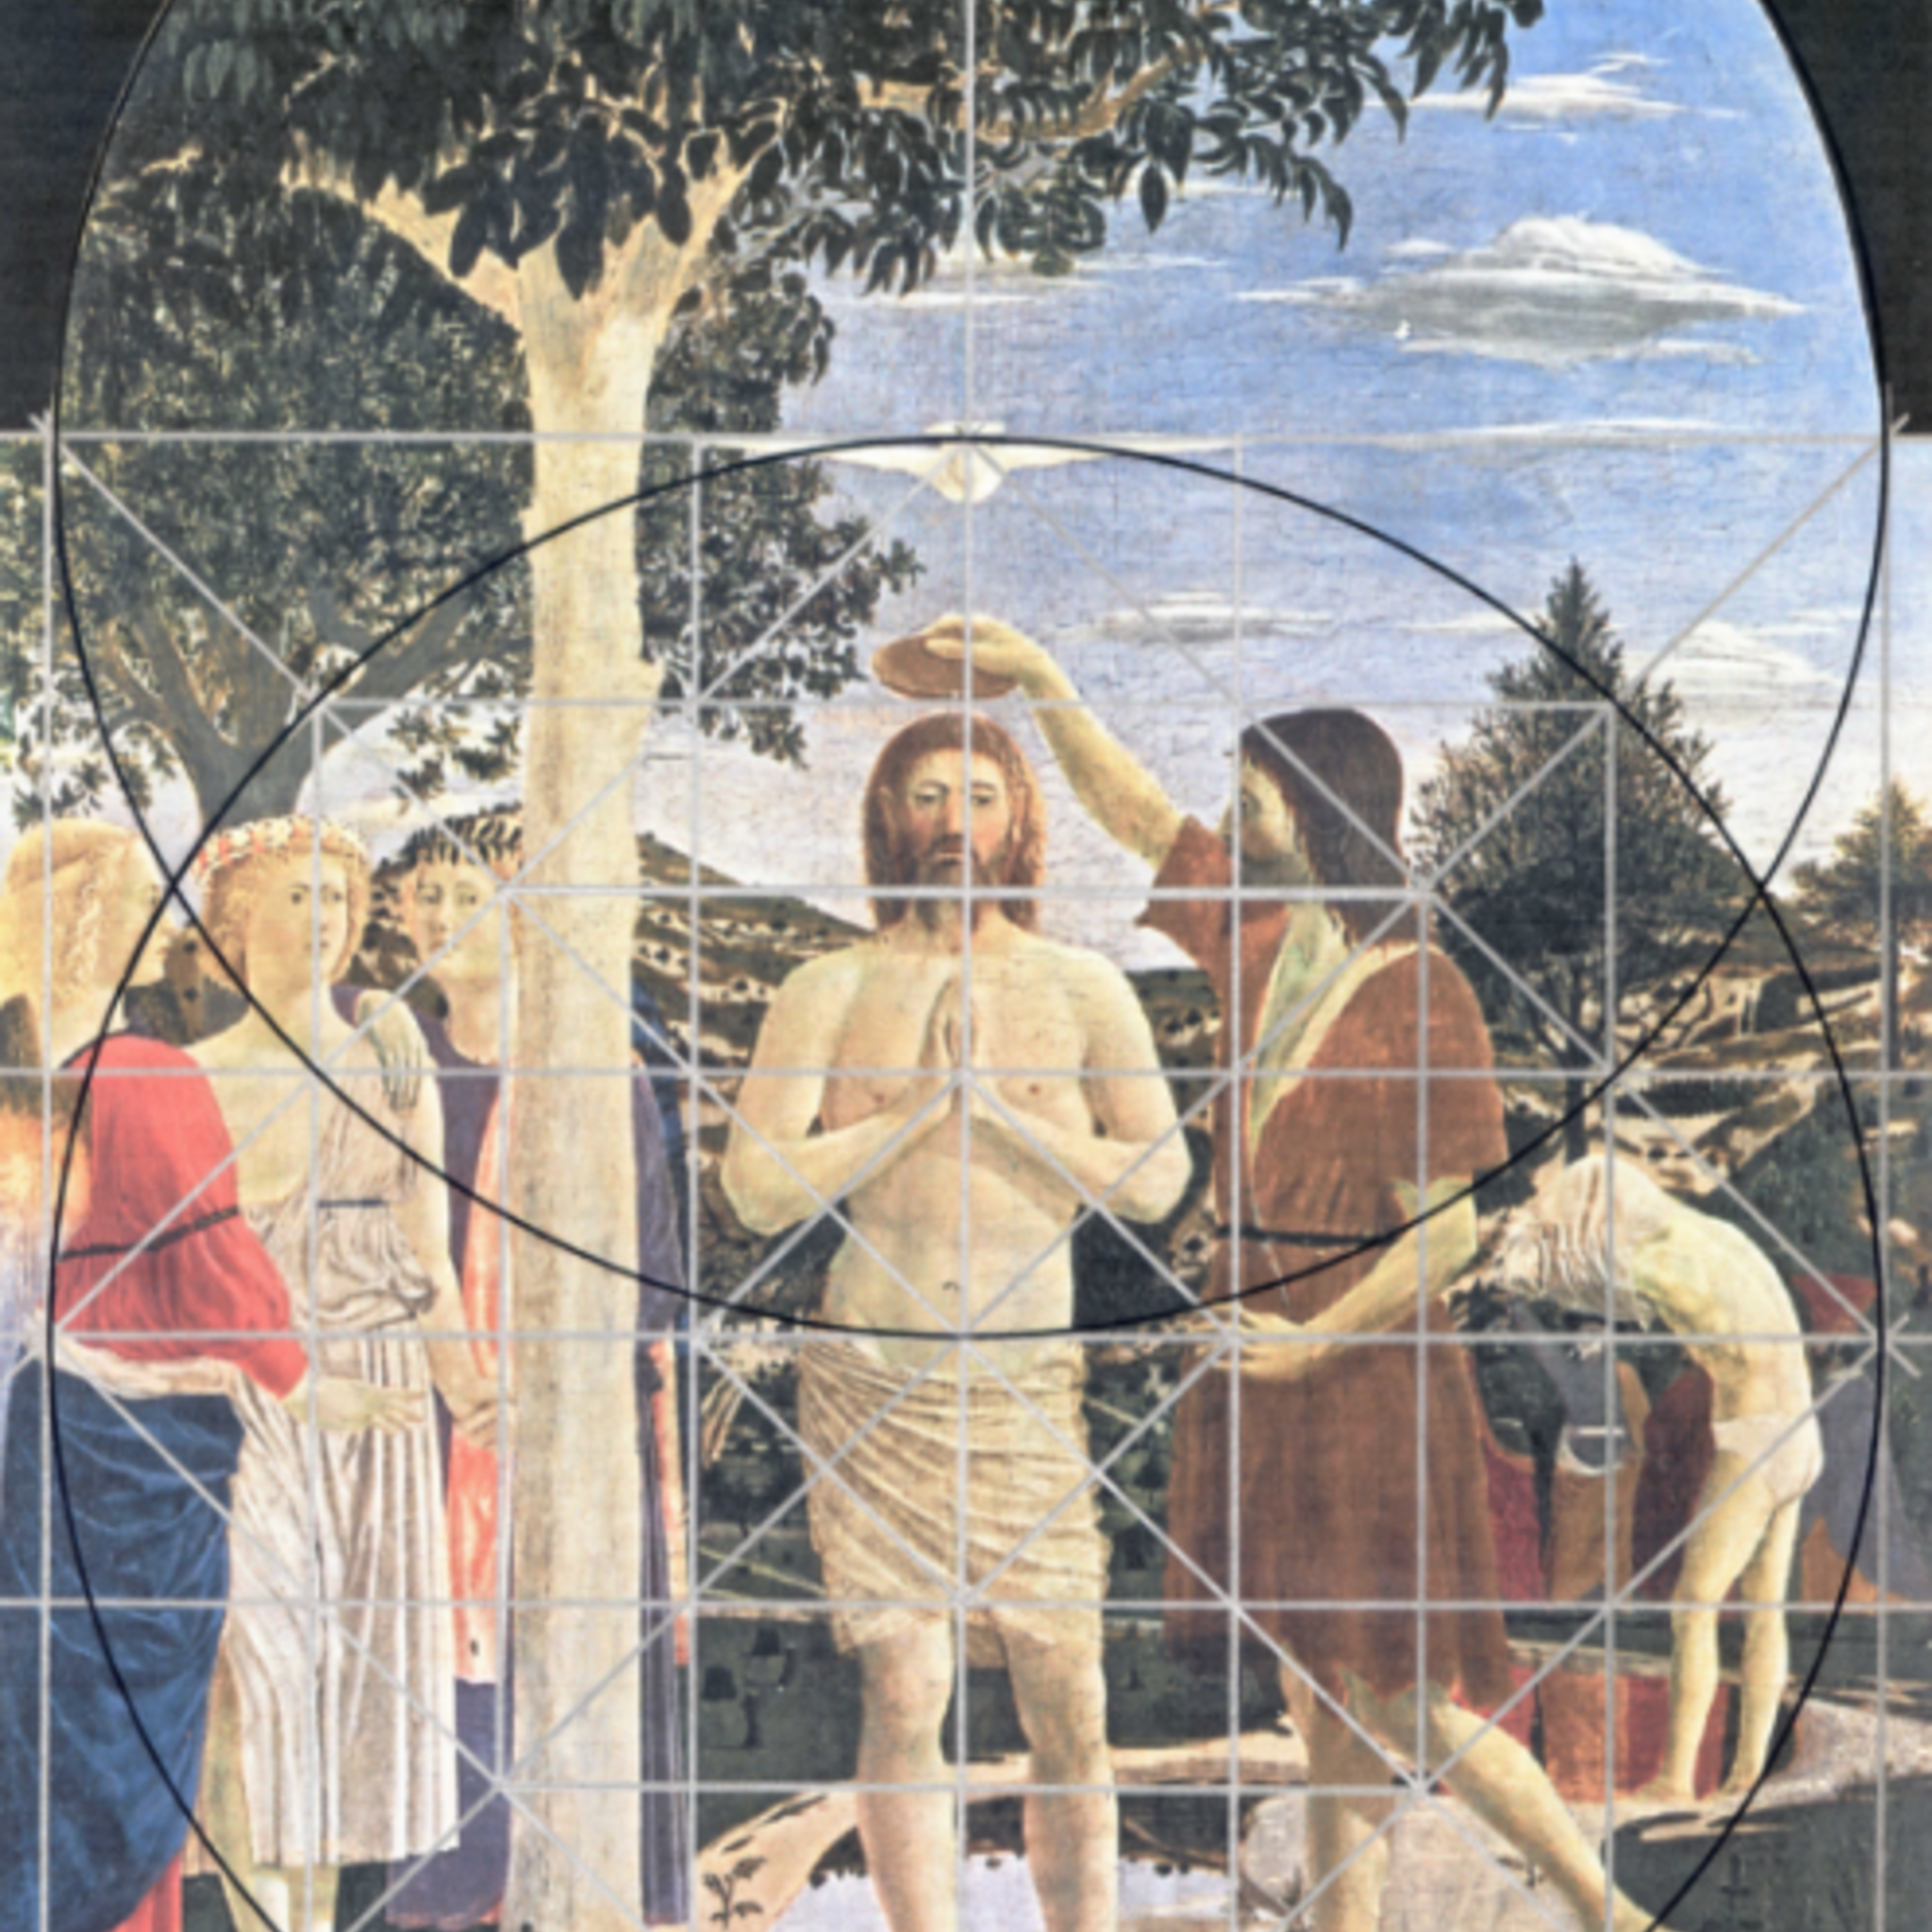 Exhibition 600th anniversary of the birth of Piero della Francesca